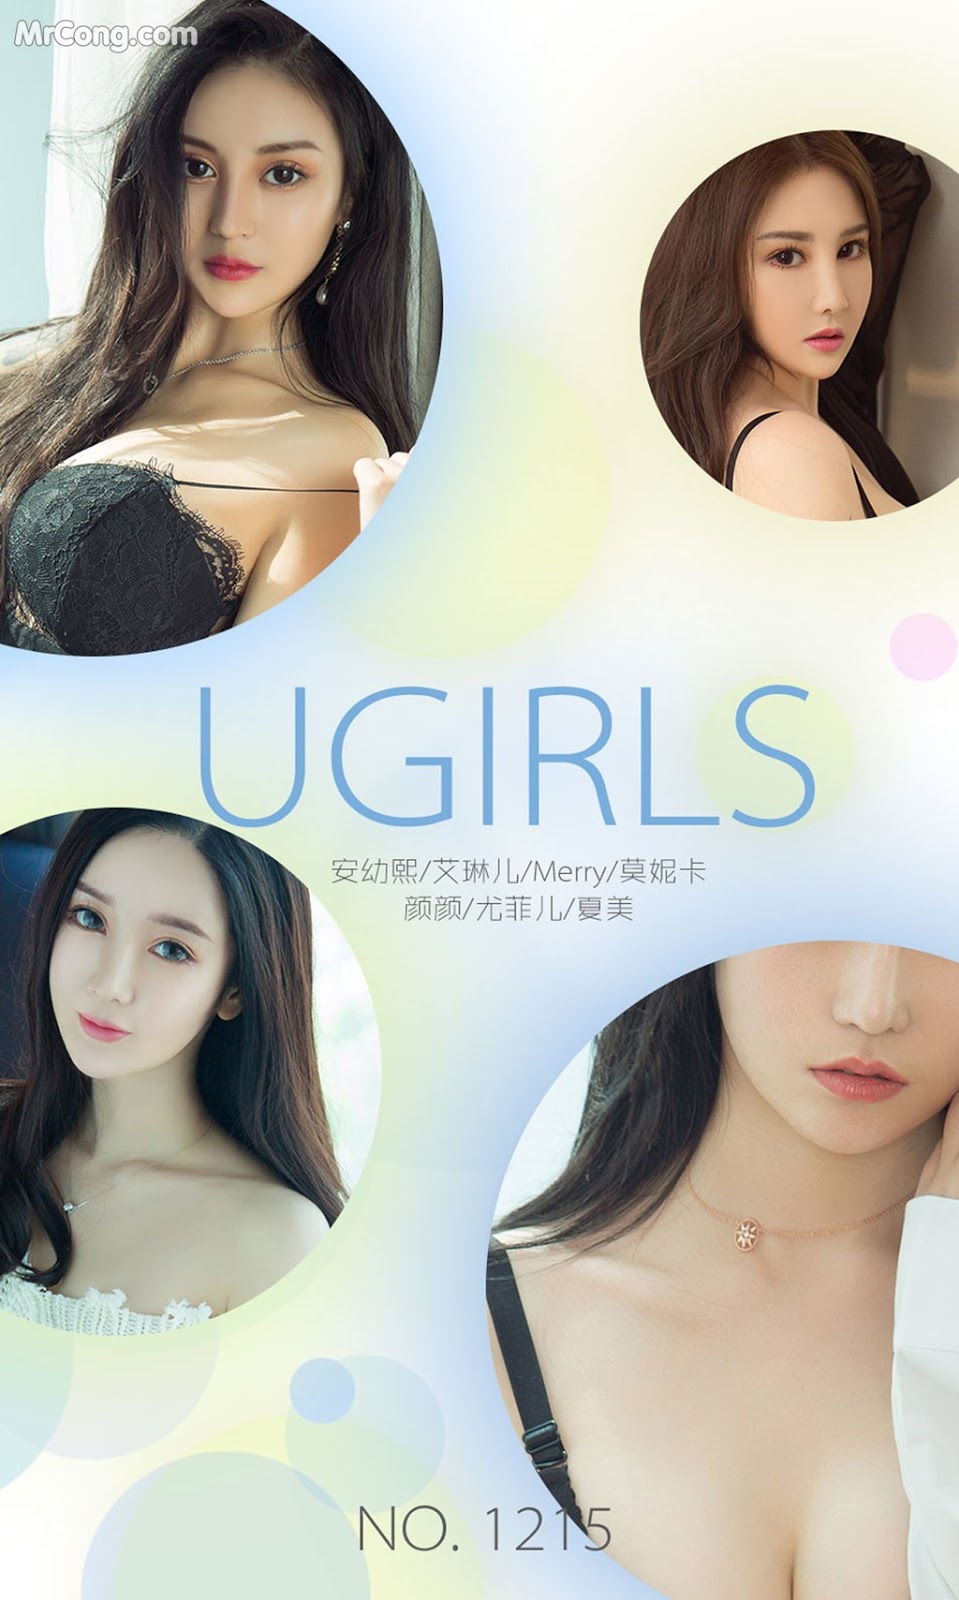 UGIRLS - Ai You Wu App No.1215: Various Models (35 photos) photo 2-7